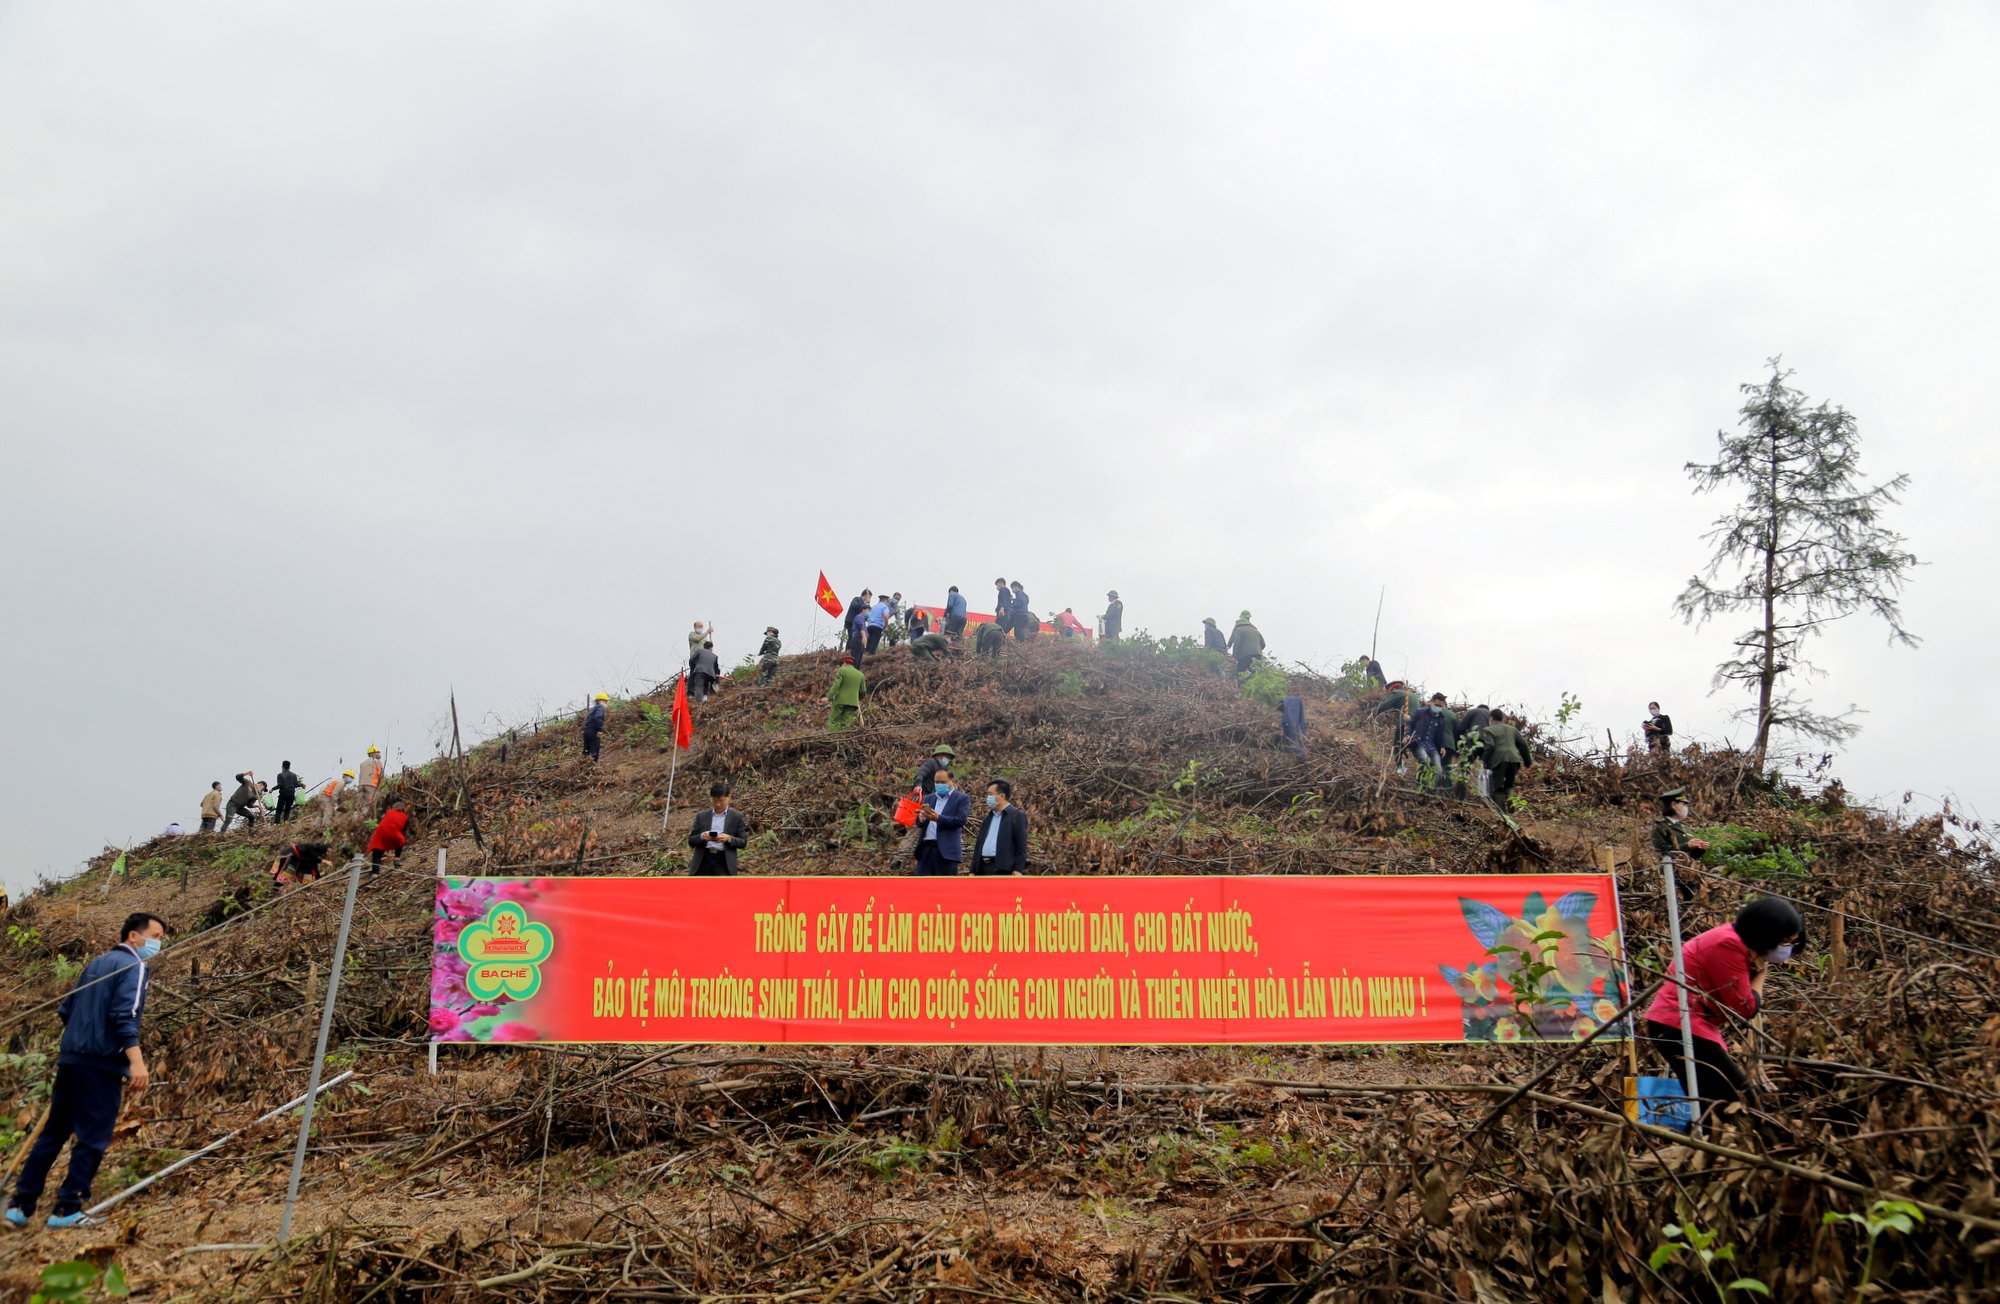 Ngay trong lễ phát động, đã có 4.700 cây gỗ lớn các loại được trồng tại khu vực Hồ chứa nước thôn Khe Lọng, xã Thanh Sơn, huyện Ba Chẽ.